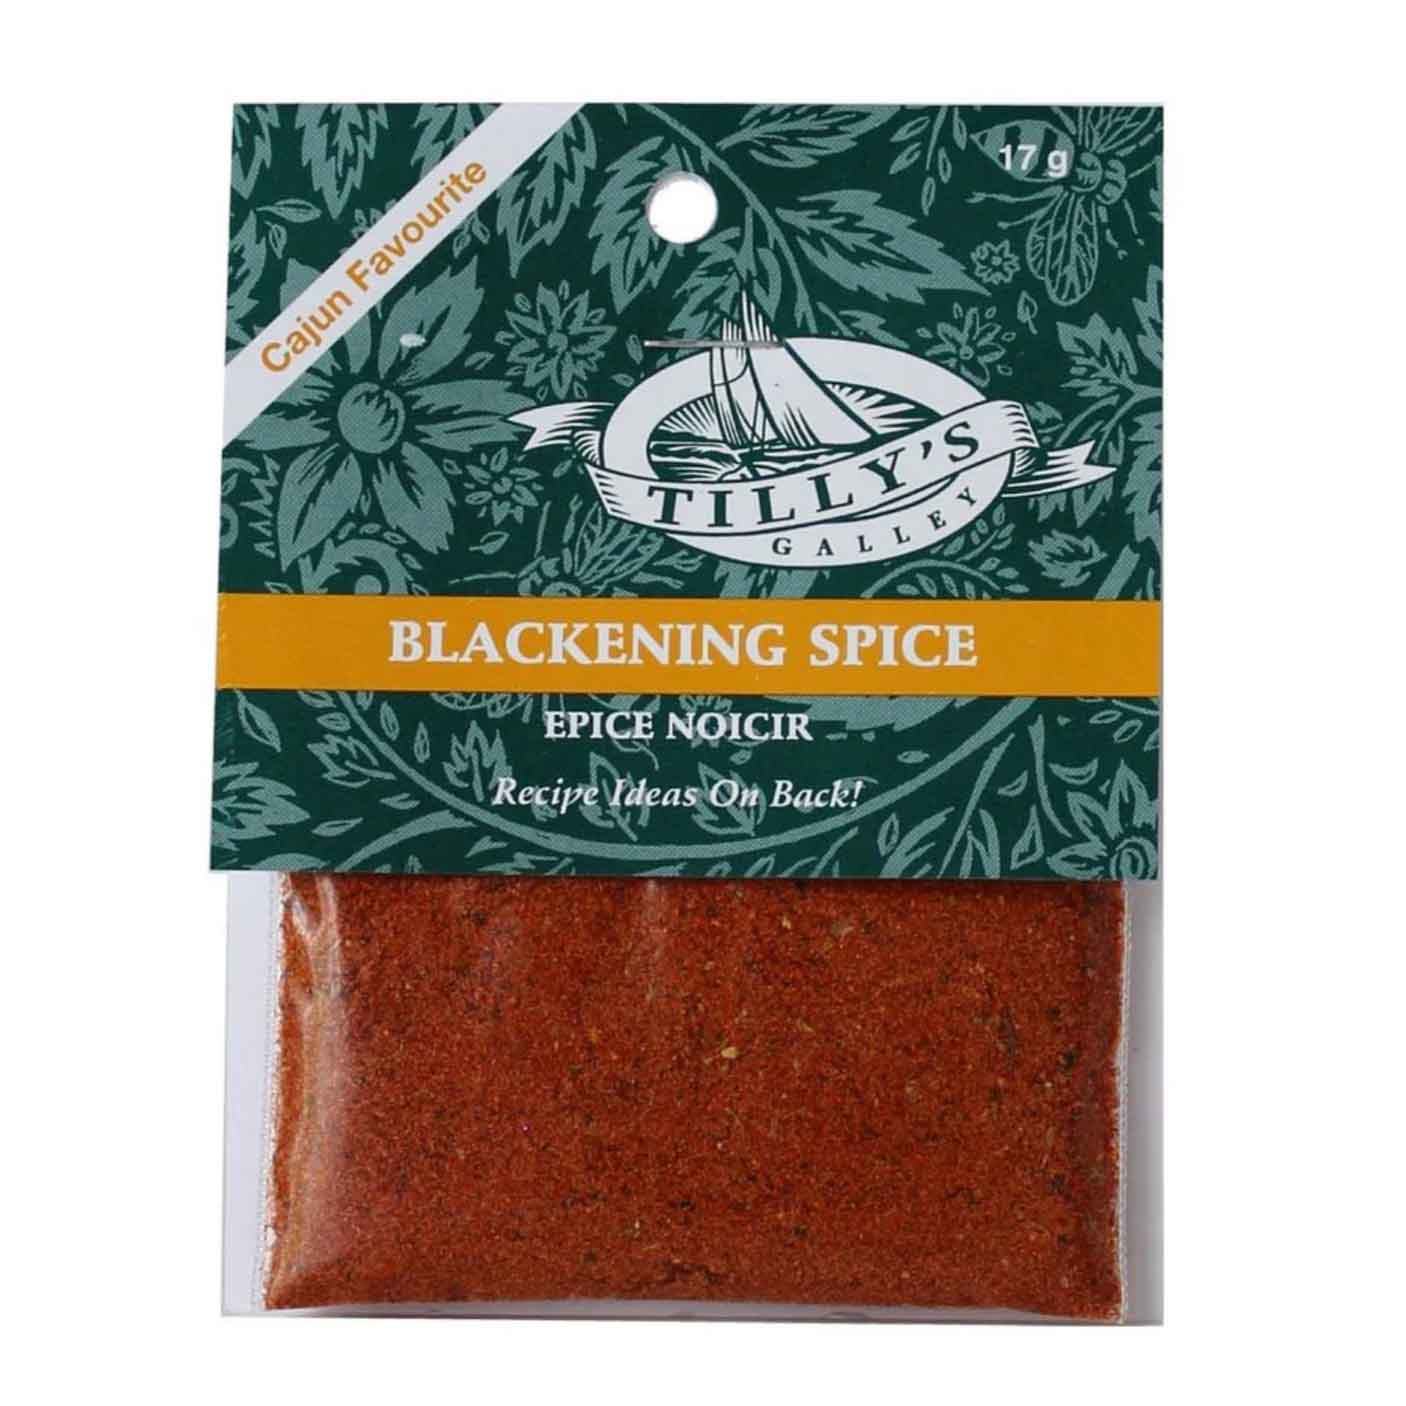 Tillys Galley Blackening Spice